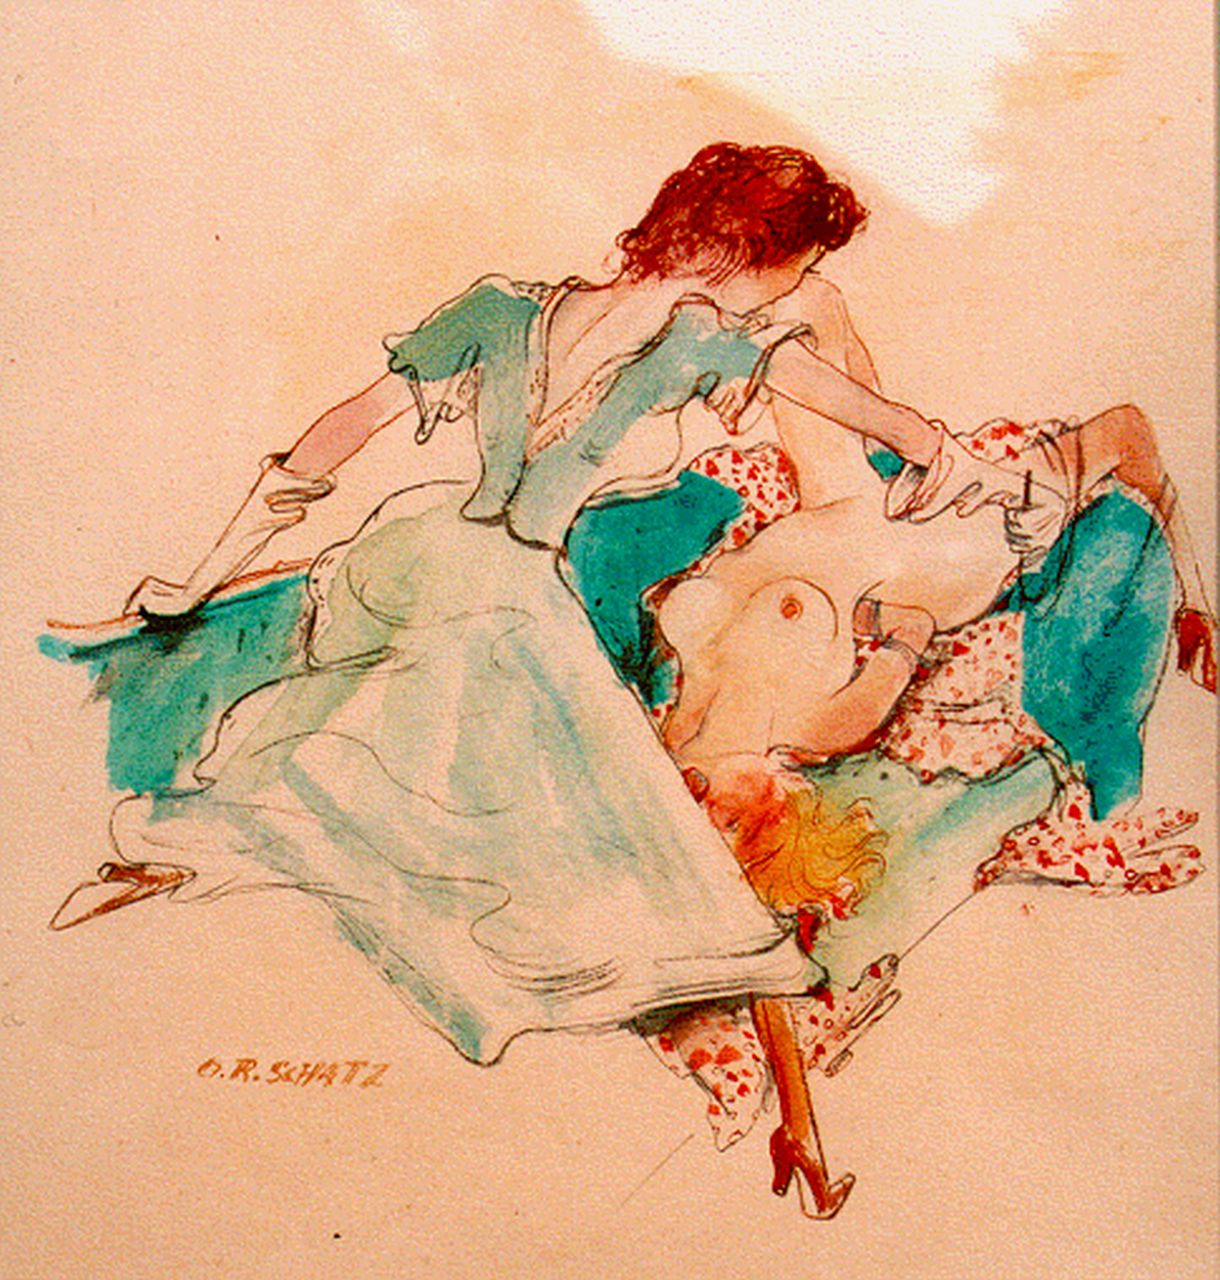 Schatz O.R.  | Otto Rudolf Schatz, Erotische scene, Aquarell auf Papier 29,0 x 27,0 cm, gesigneerd rechtsonder